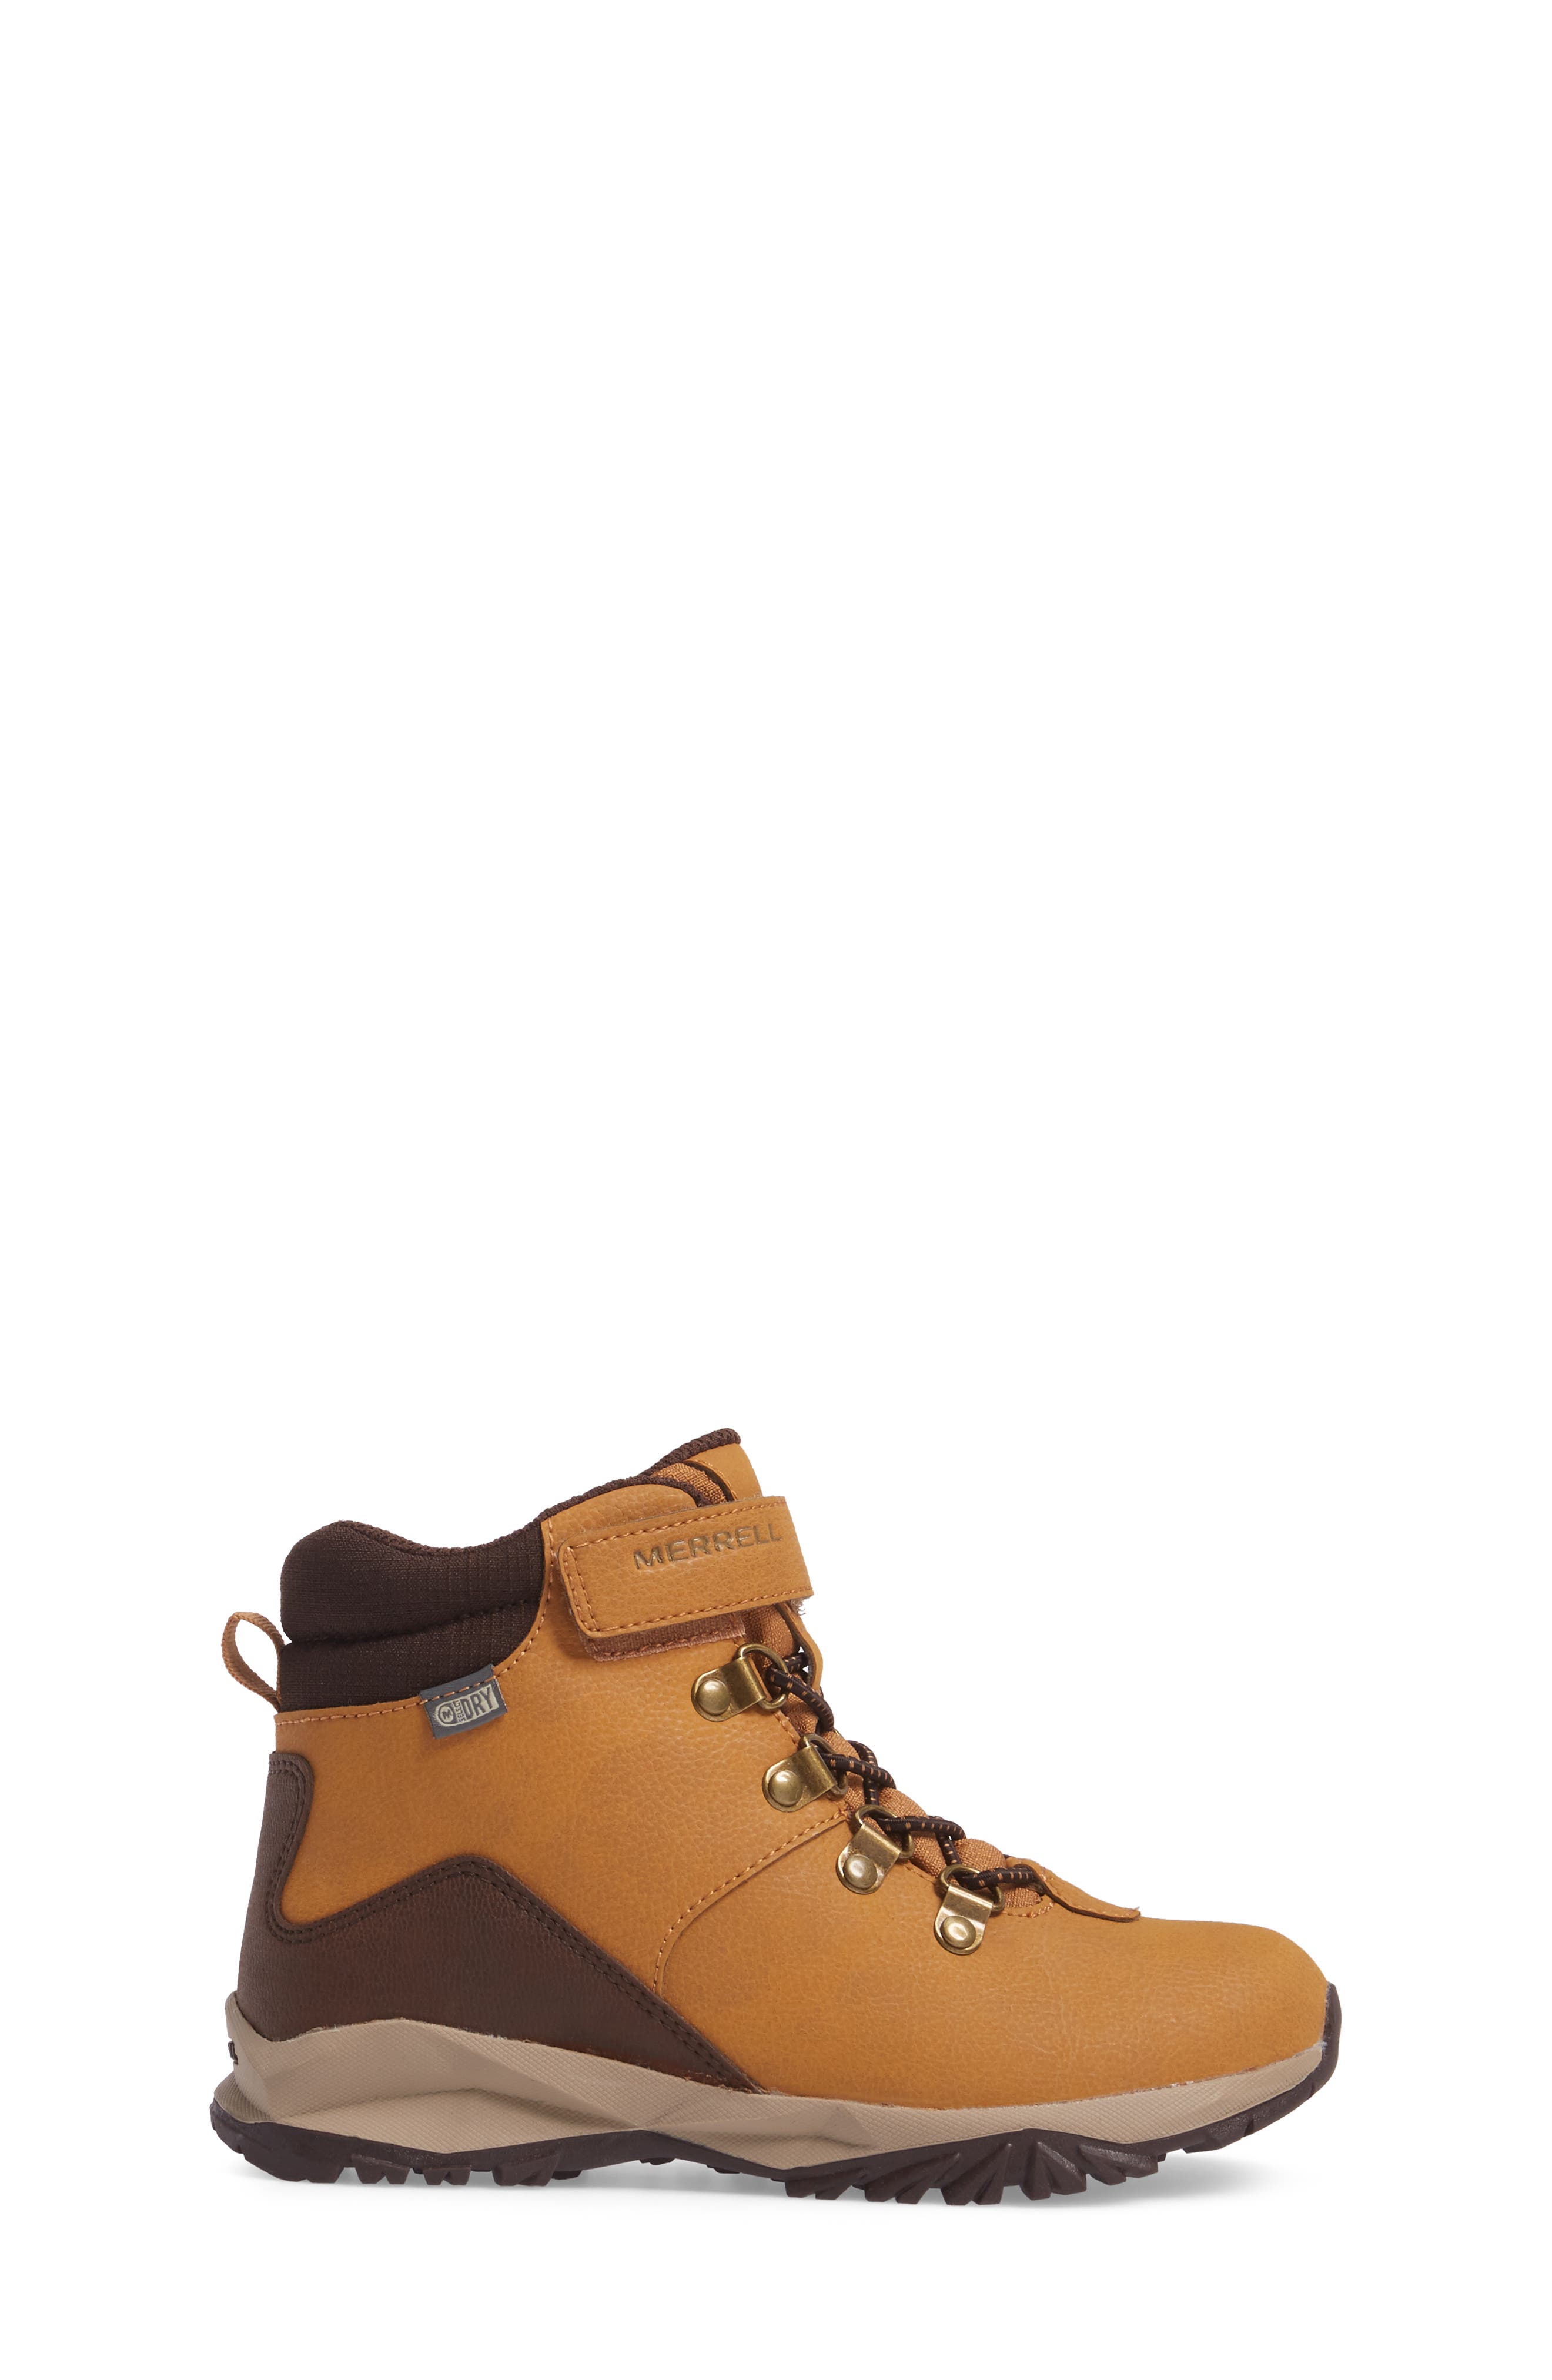 merrell alpine waterproof boot